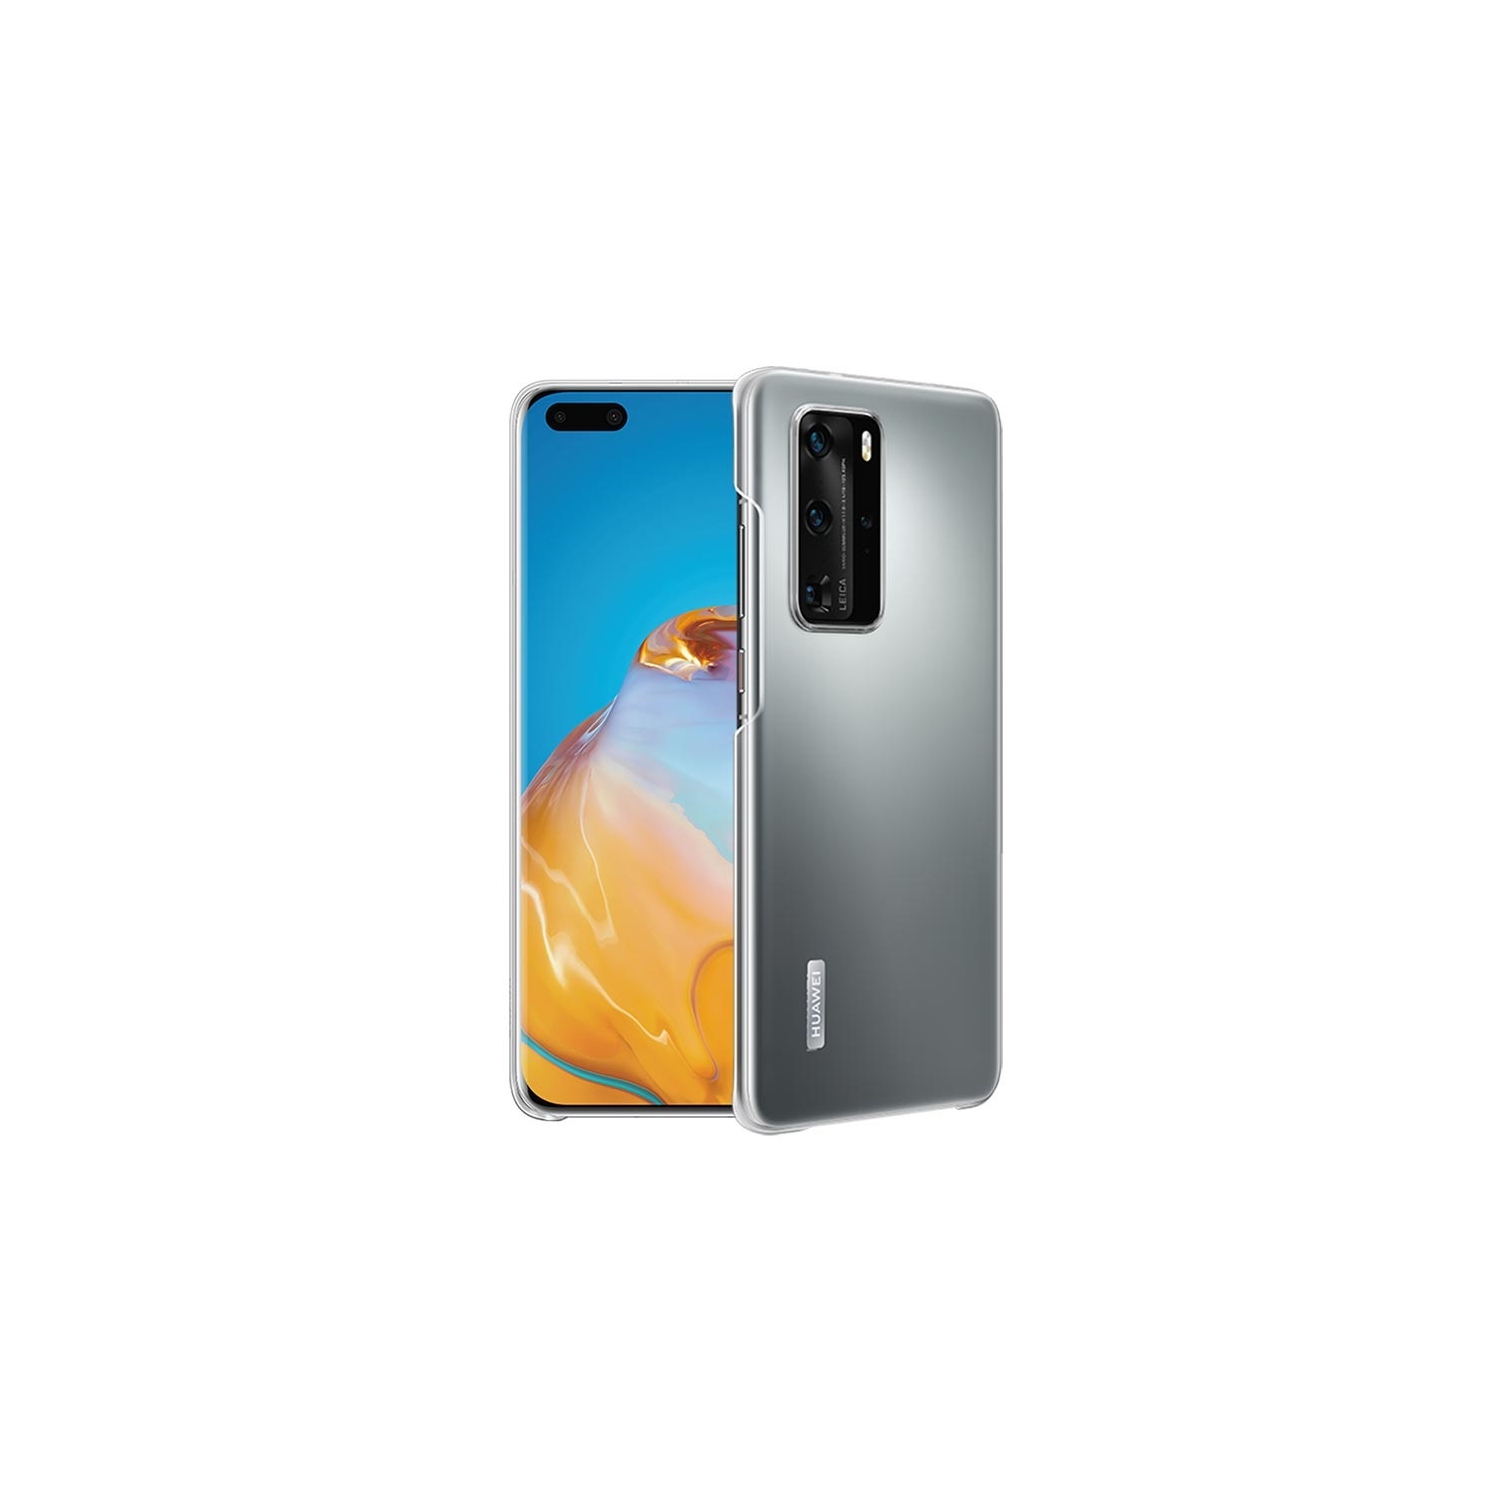 Huawei P40 Pro 256GB Smartphone - Frost Silver - Unlocked - Open Box